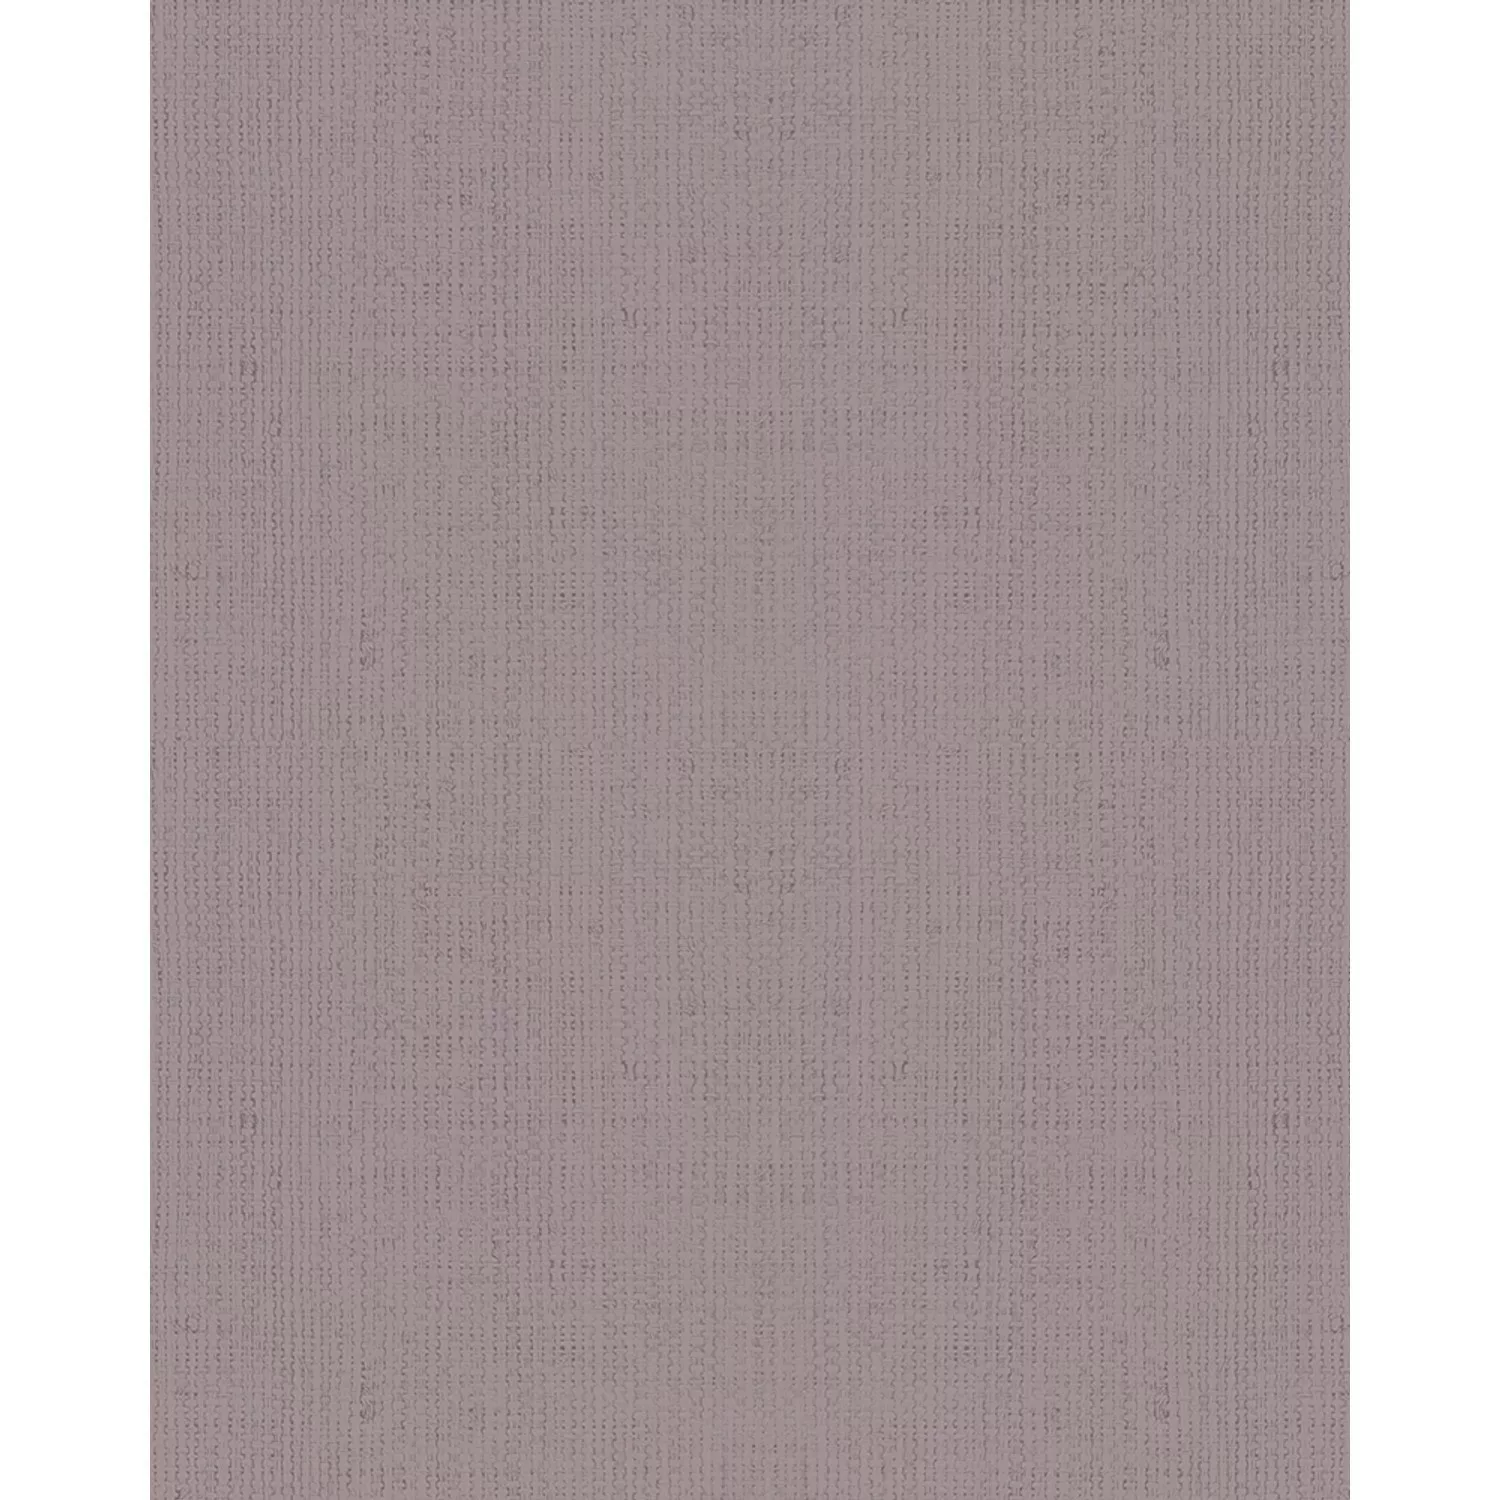 Marburg Vliestapete Struktur Kringeloptik Braun-Violett 10,05 m x 0,53 m FS günstig online kaufen